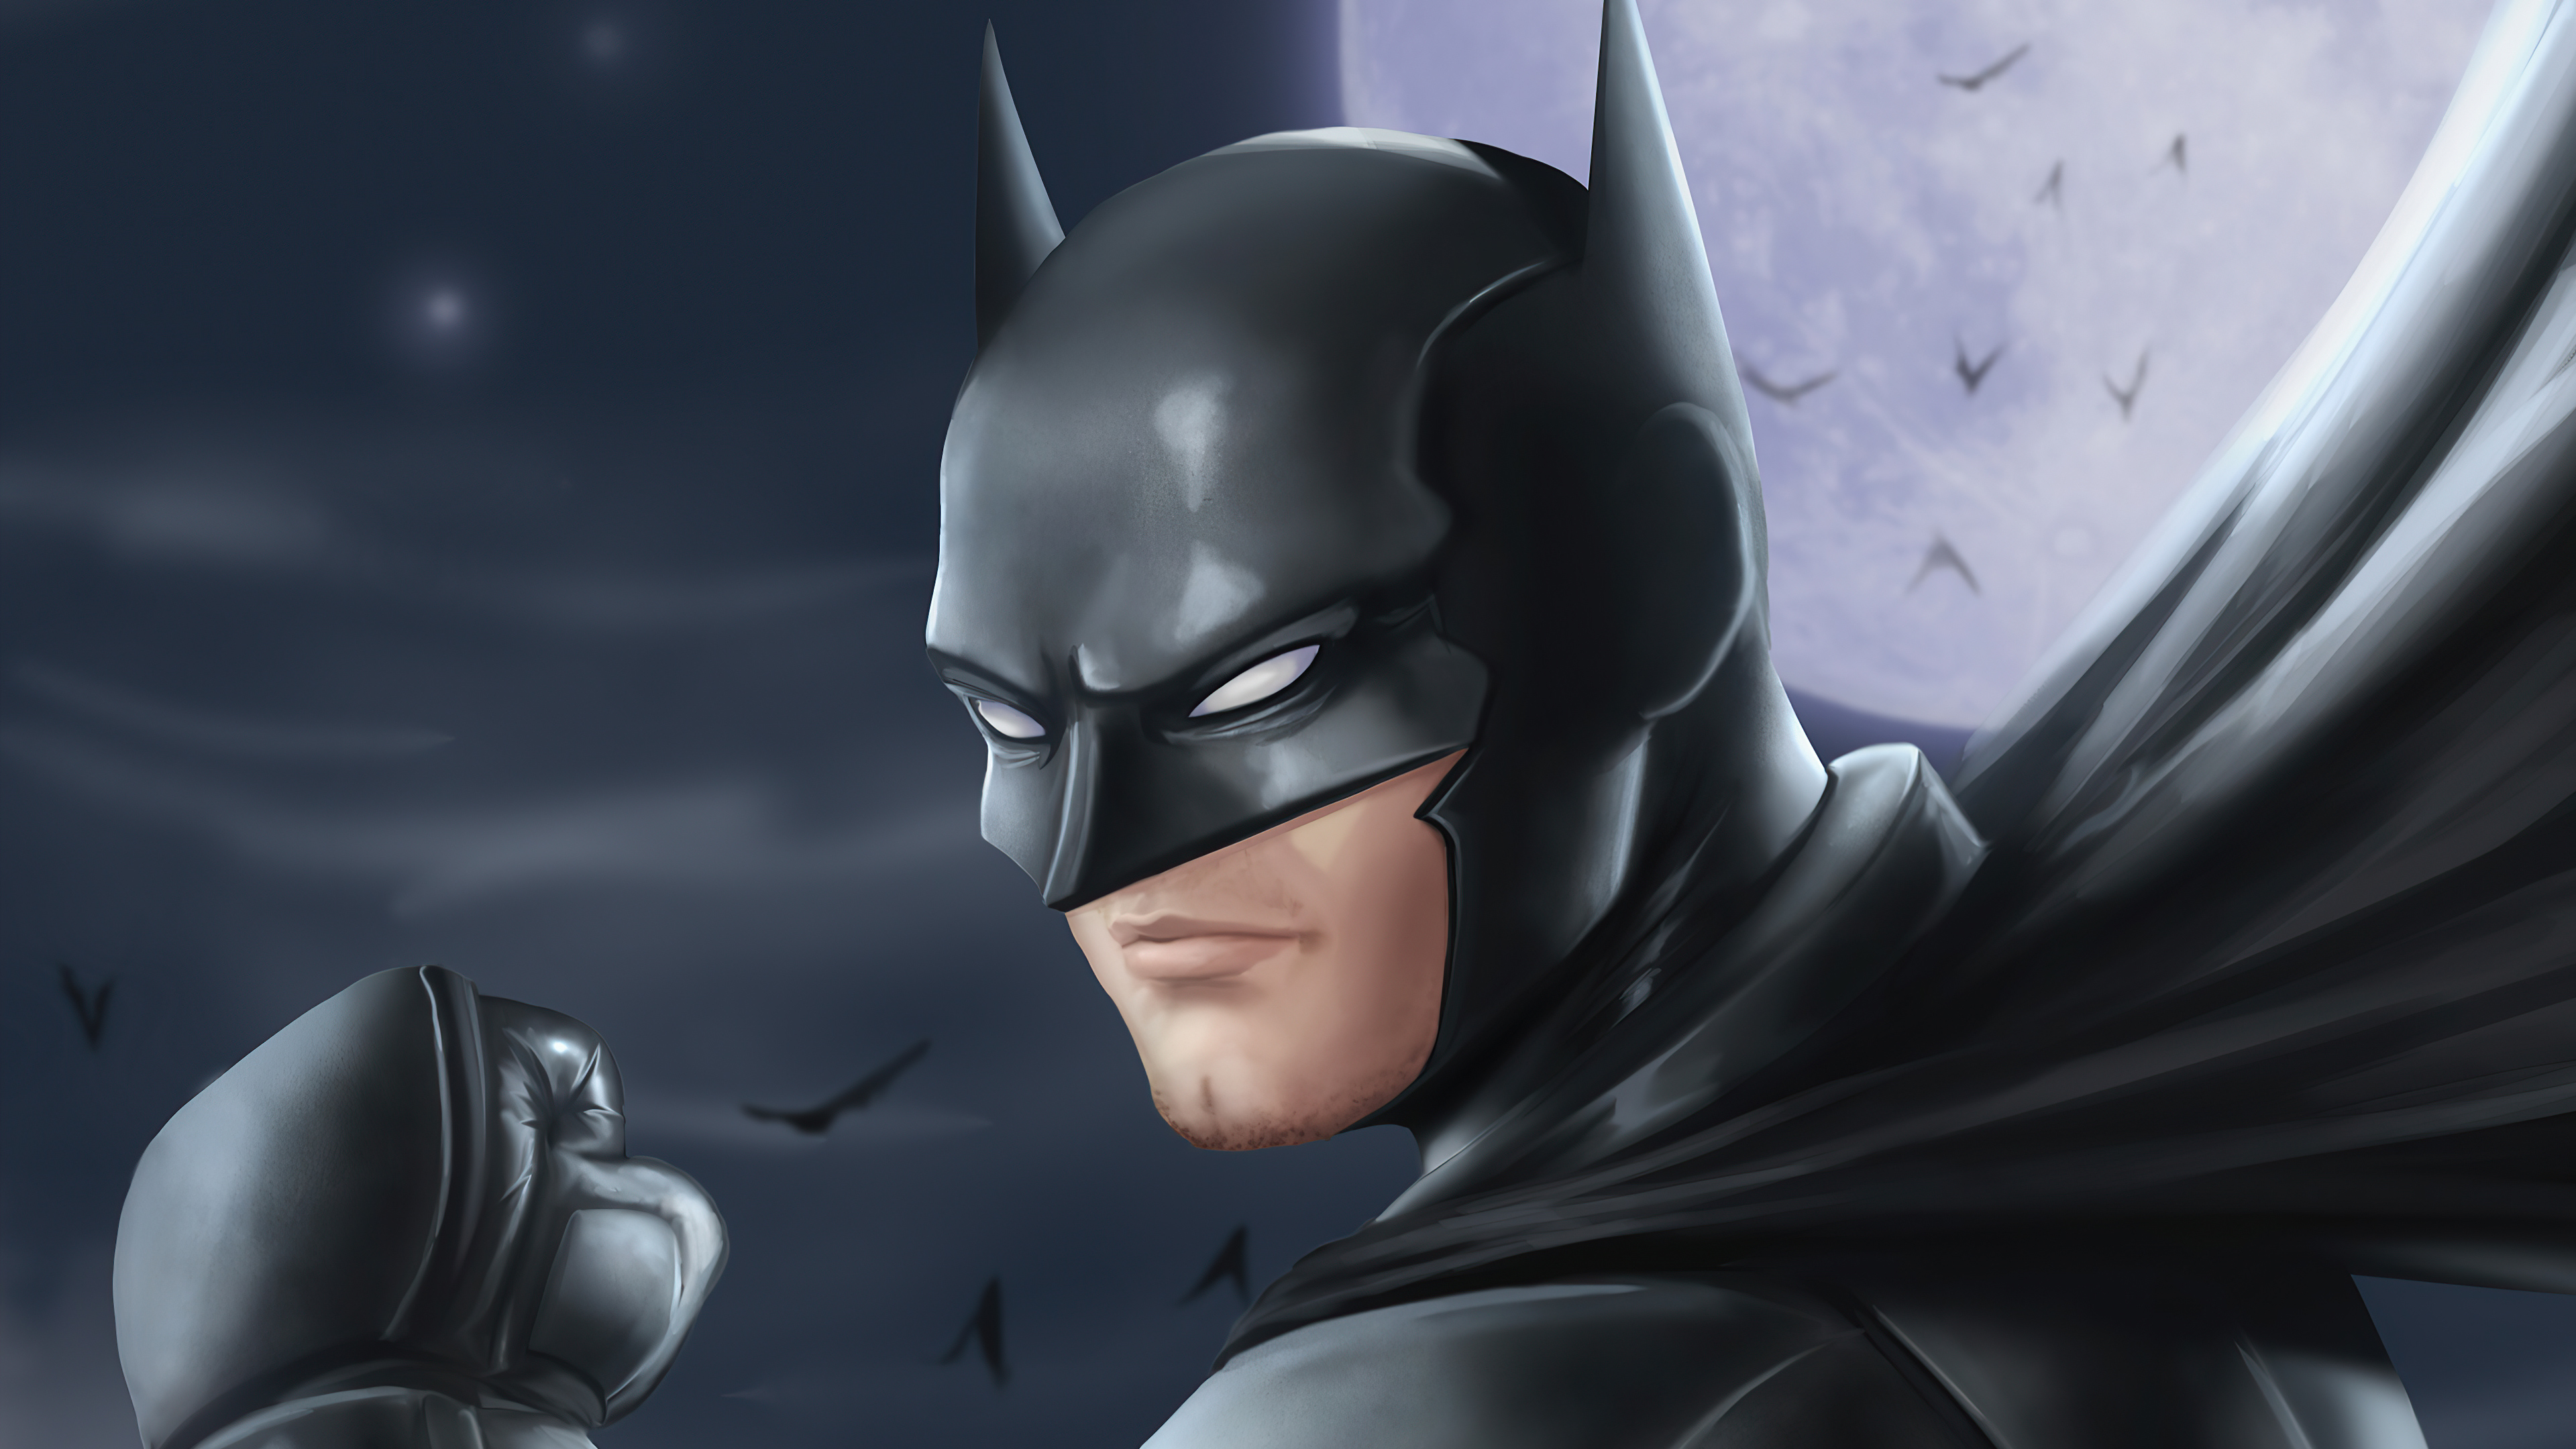 Download mobile wallpaper Batman, Comics, Dc Comics for free.